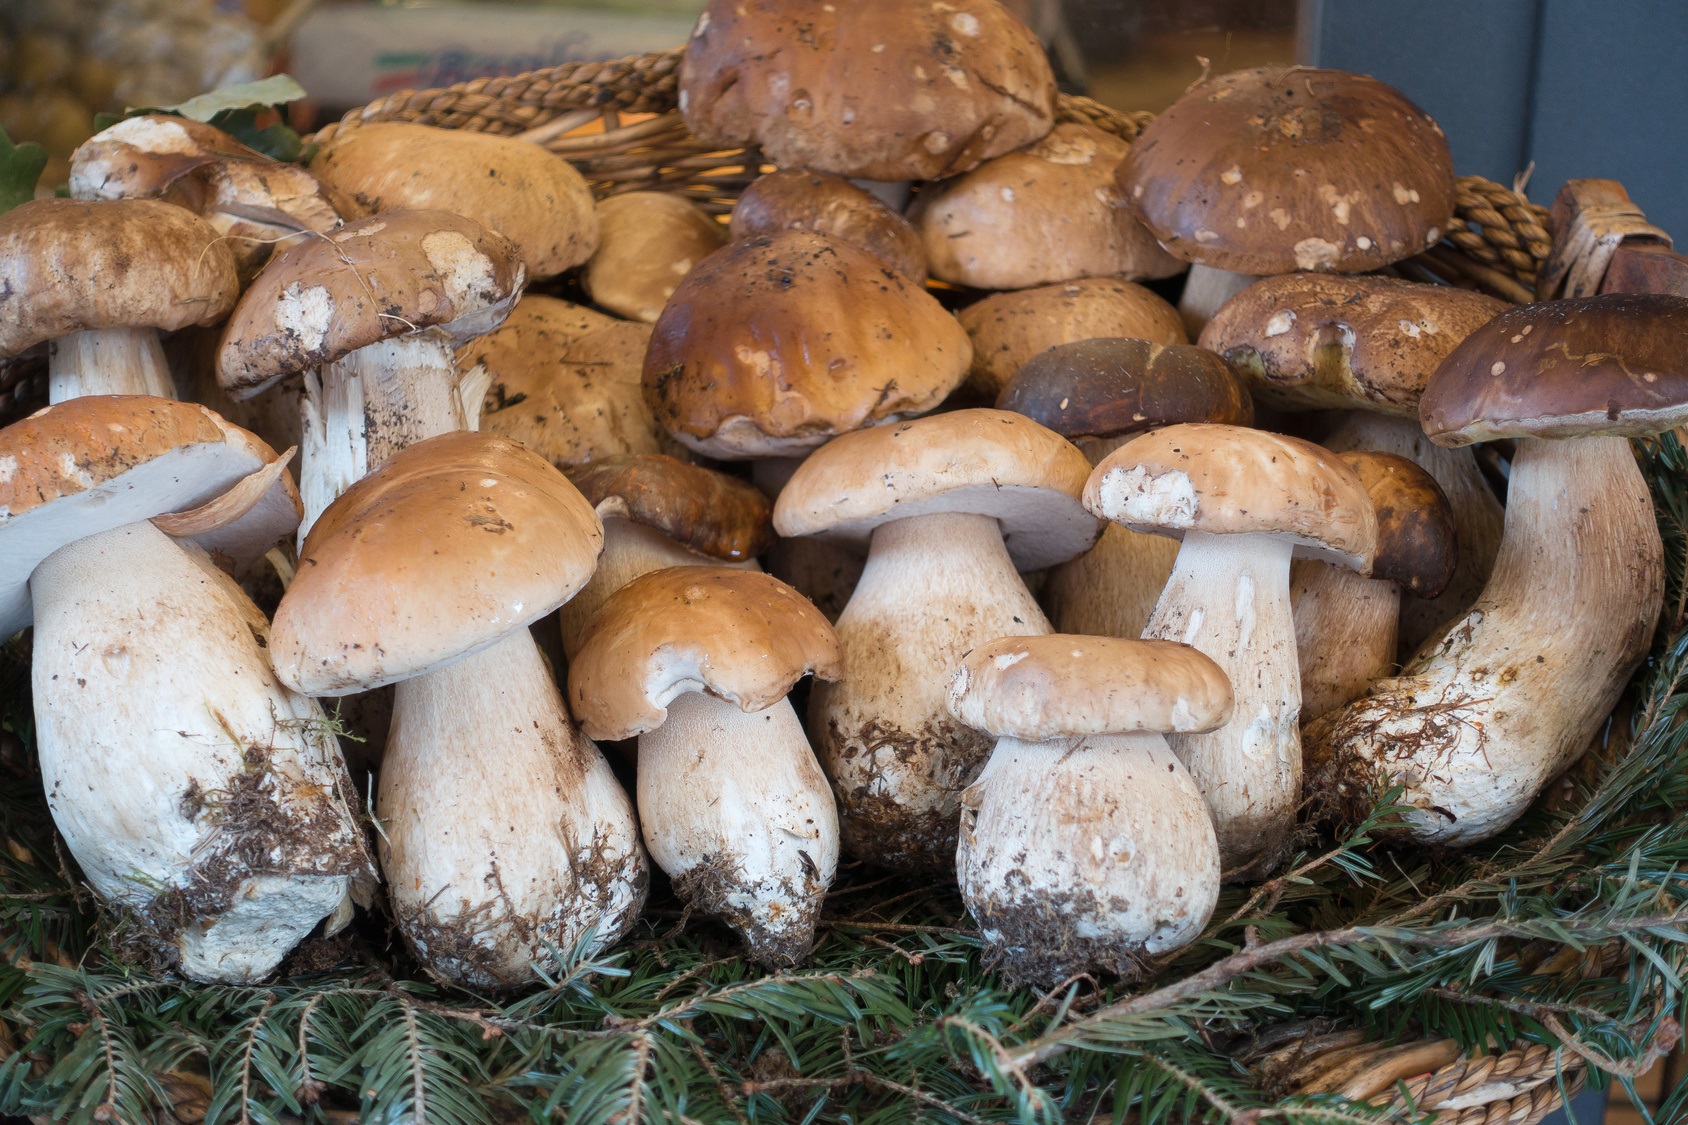 Des champignons pour rester jeune, c'est possible ? Les bolets, notamment les cèpes, sont particulièrement riches en antioxydants. © francis bonami, Fotolia